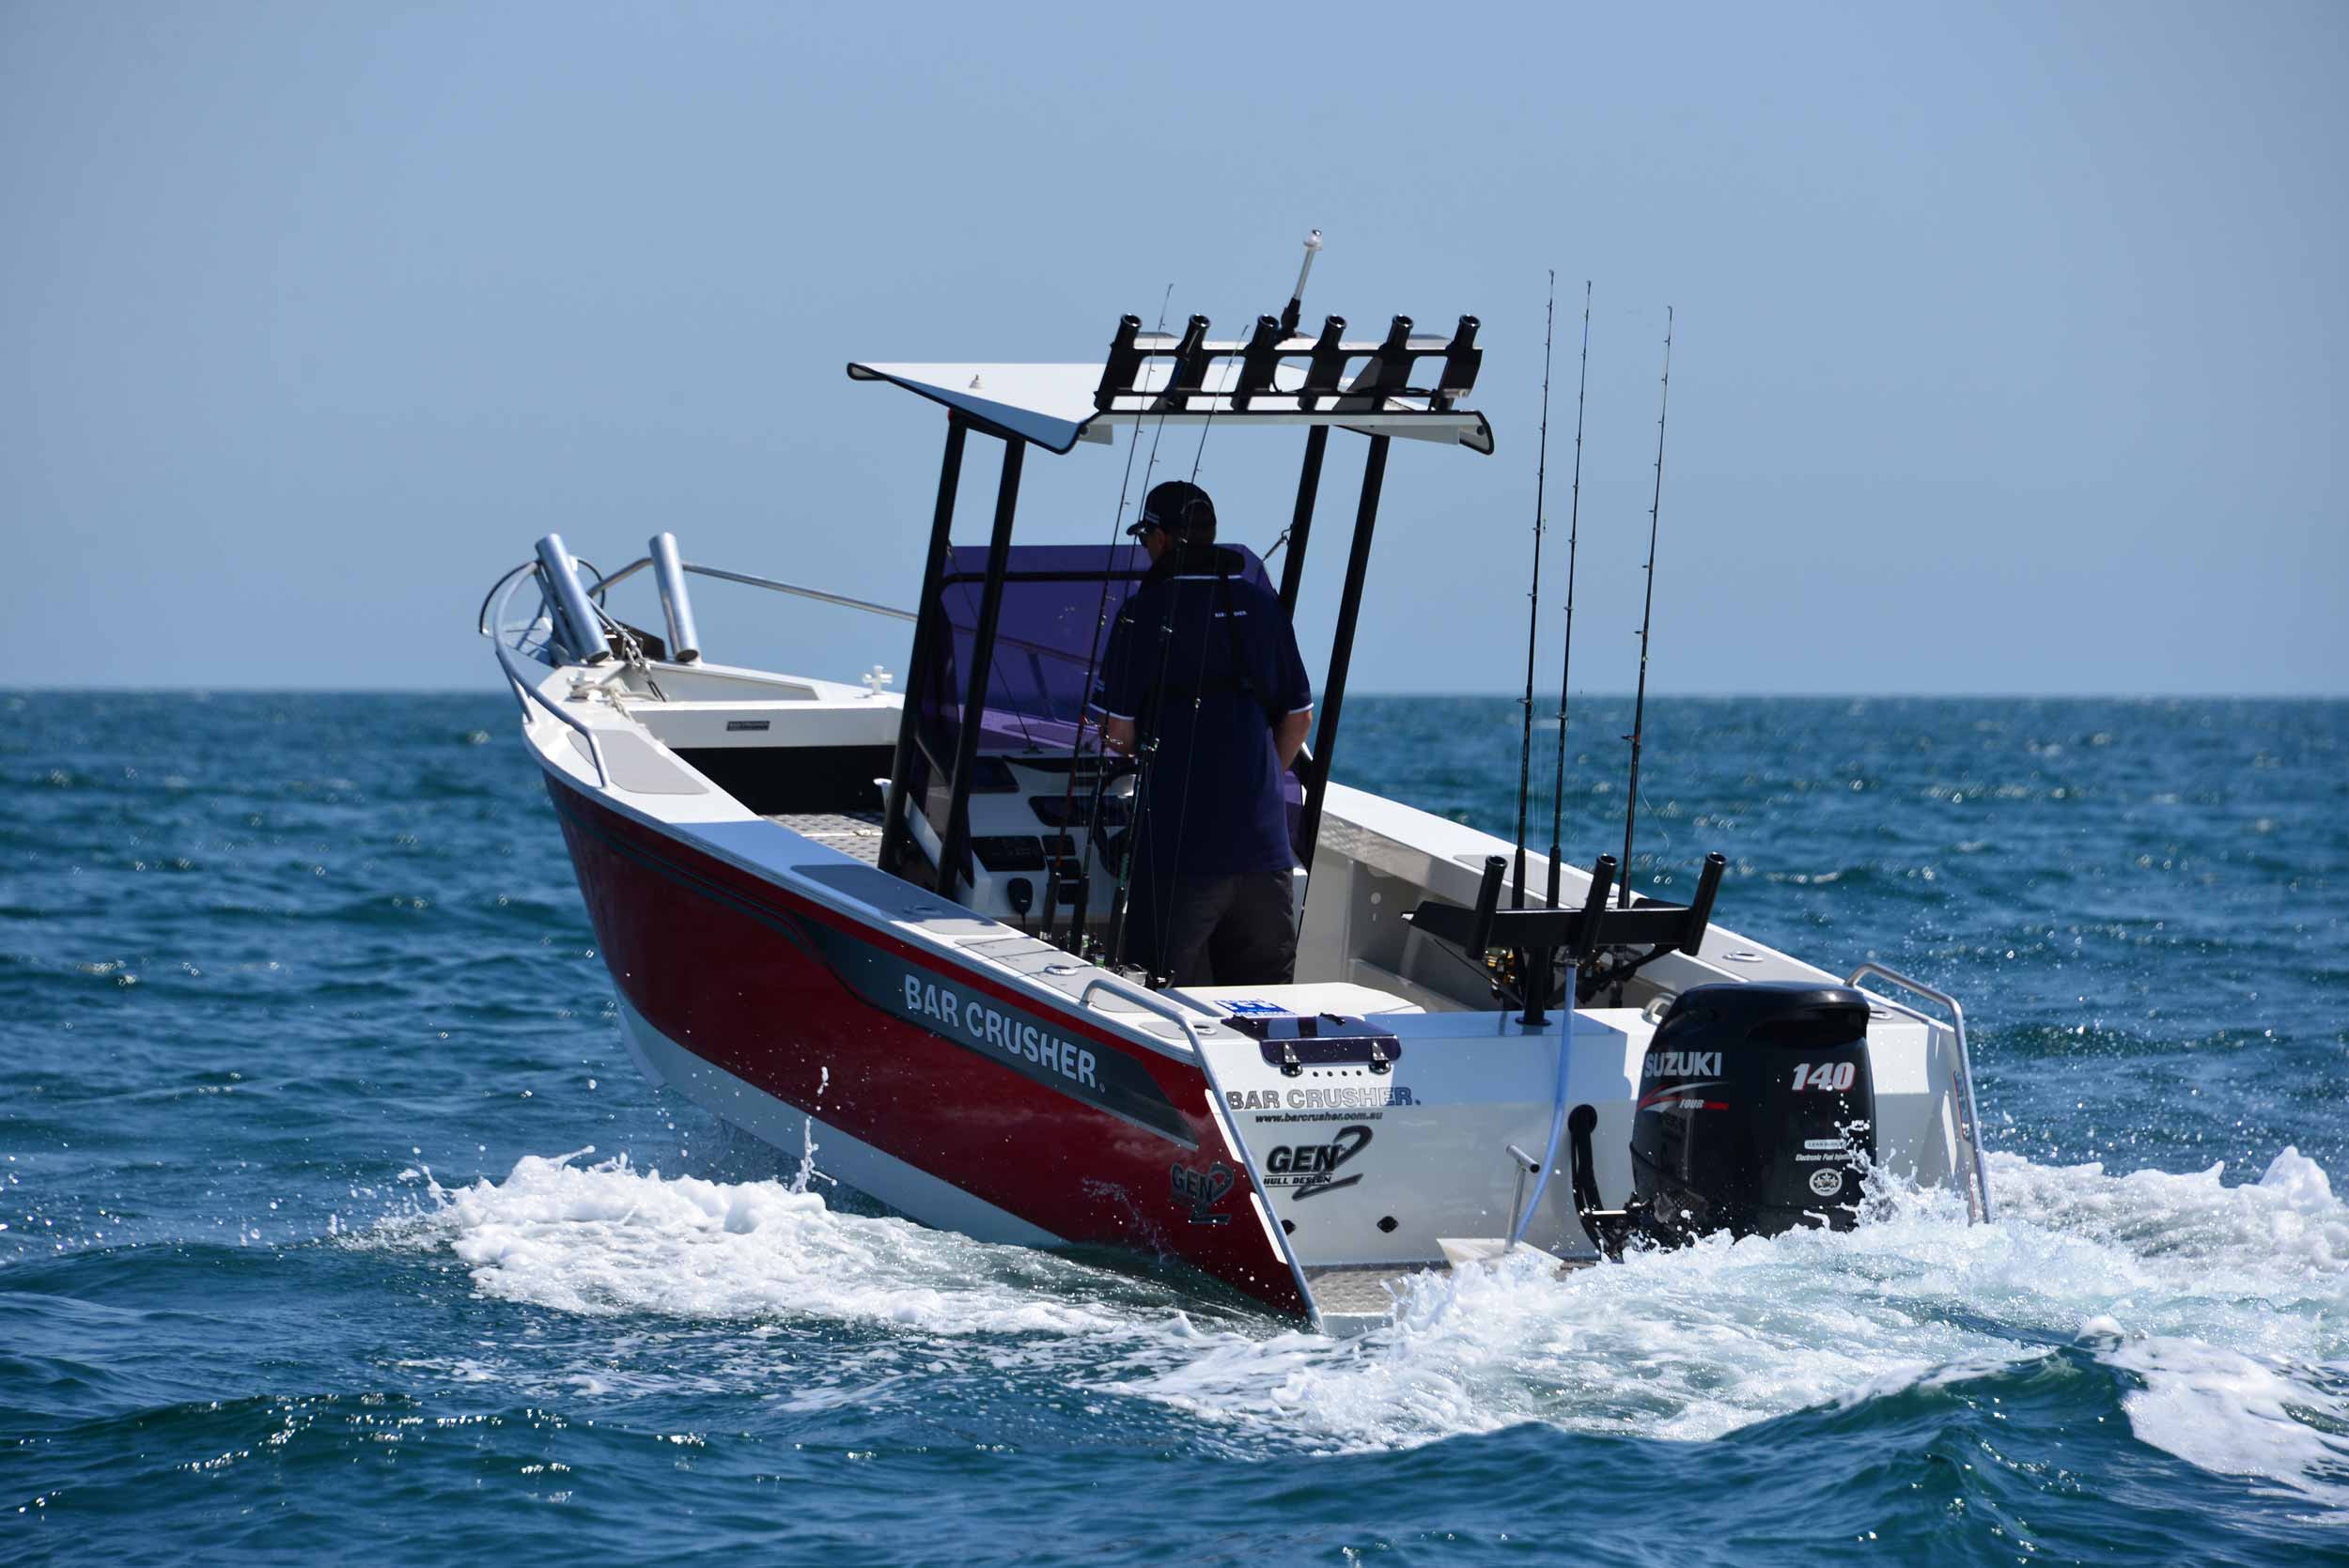 models-bar-crusher-615wr-6-plate-aluminium-fishing-boat